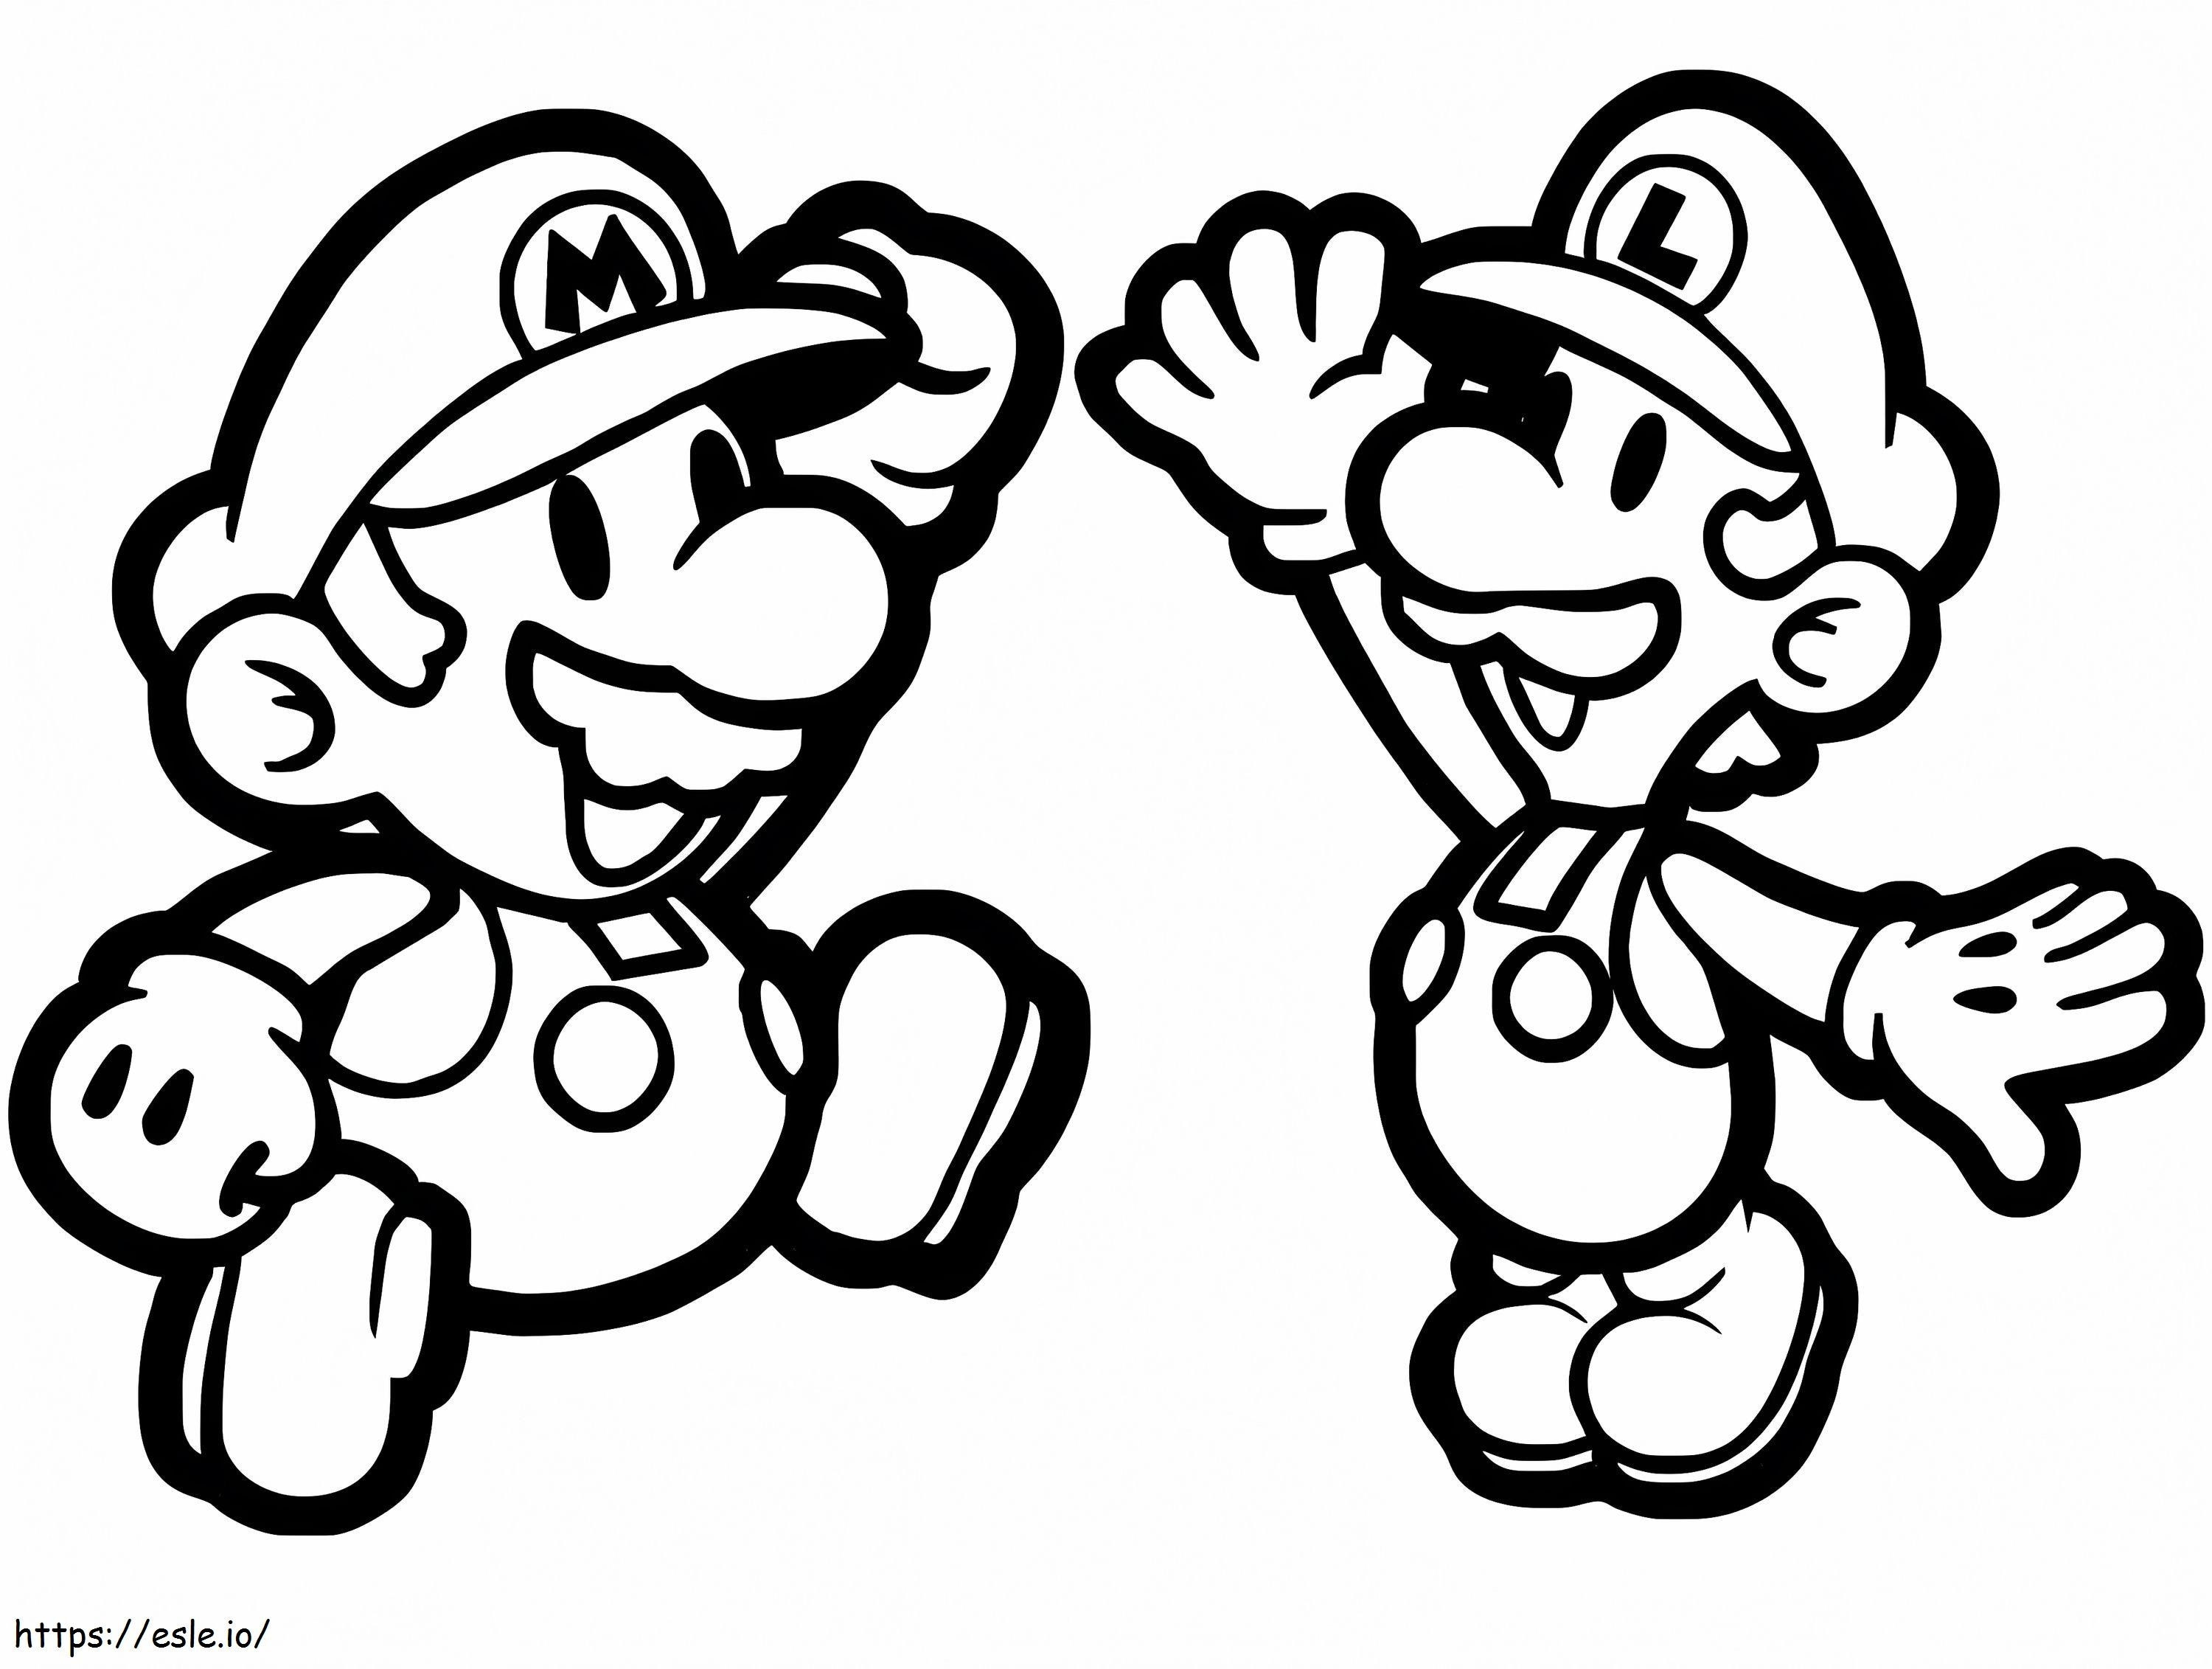 Kağıt Mario ve Luigi boyama